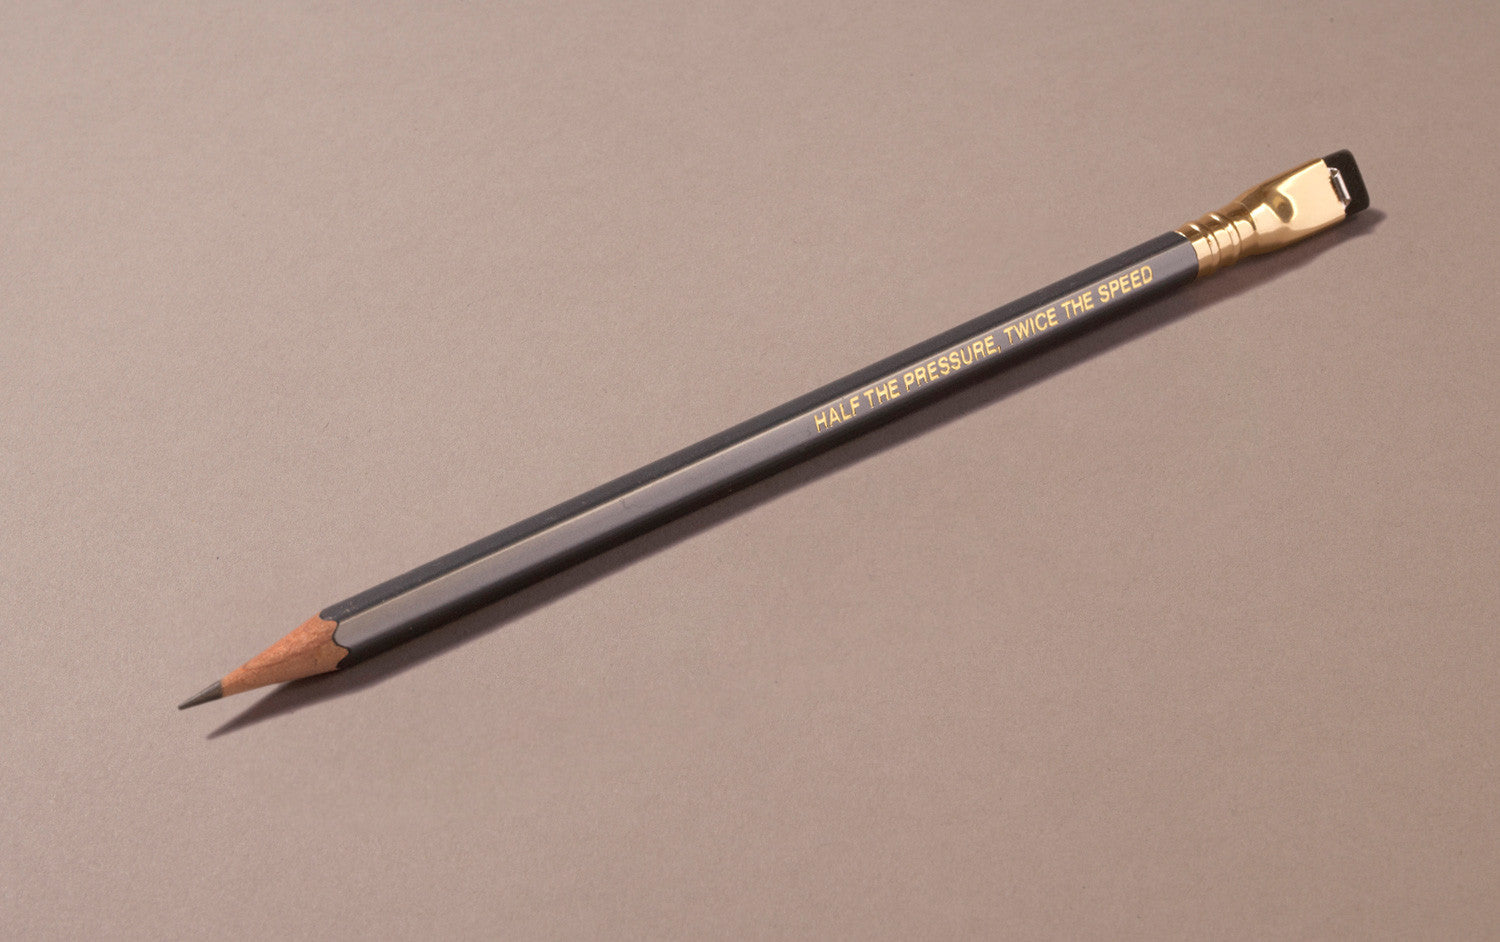 Palomino Blackwing 602 pencil